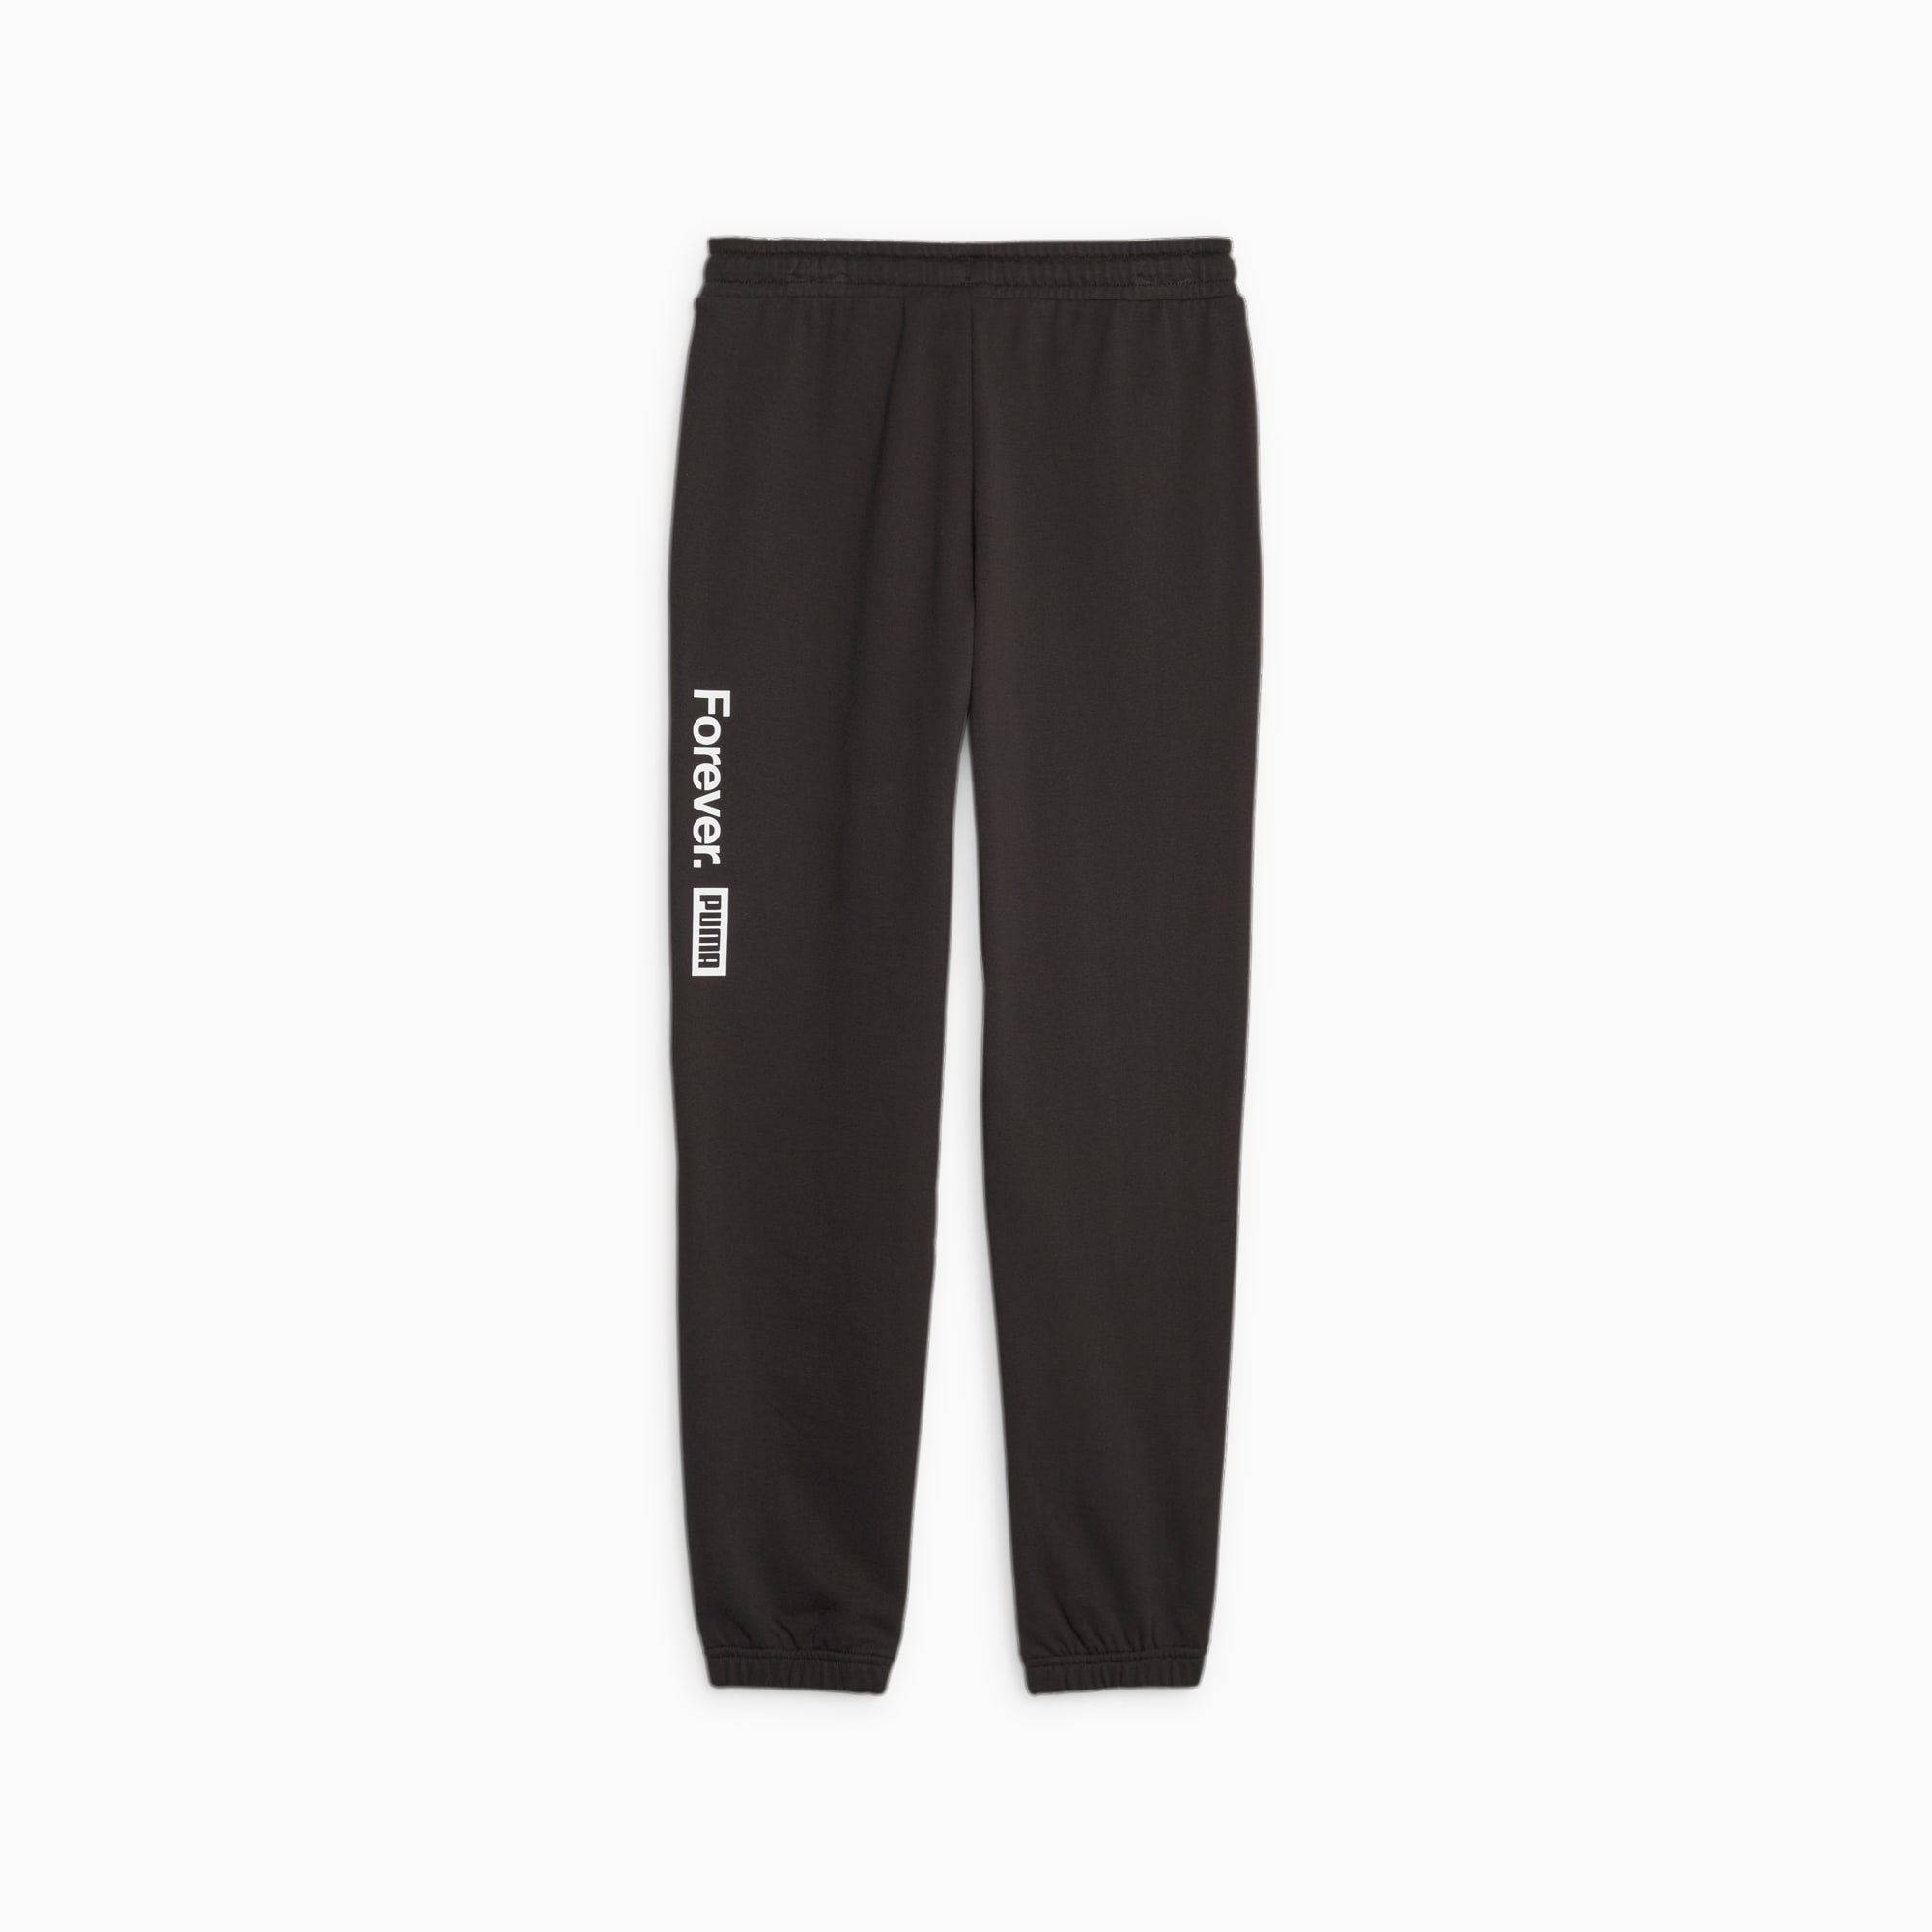 Pantalon jogging noir - Collection Loisirs & Lifestyle - Modèle Brand